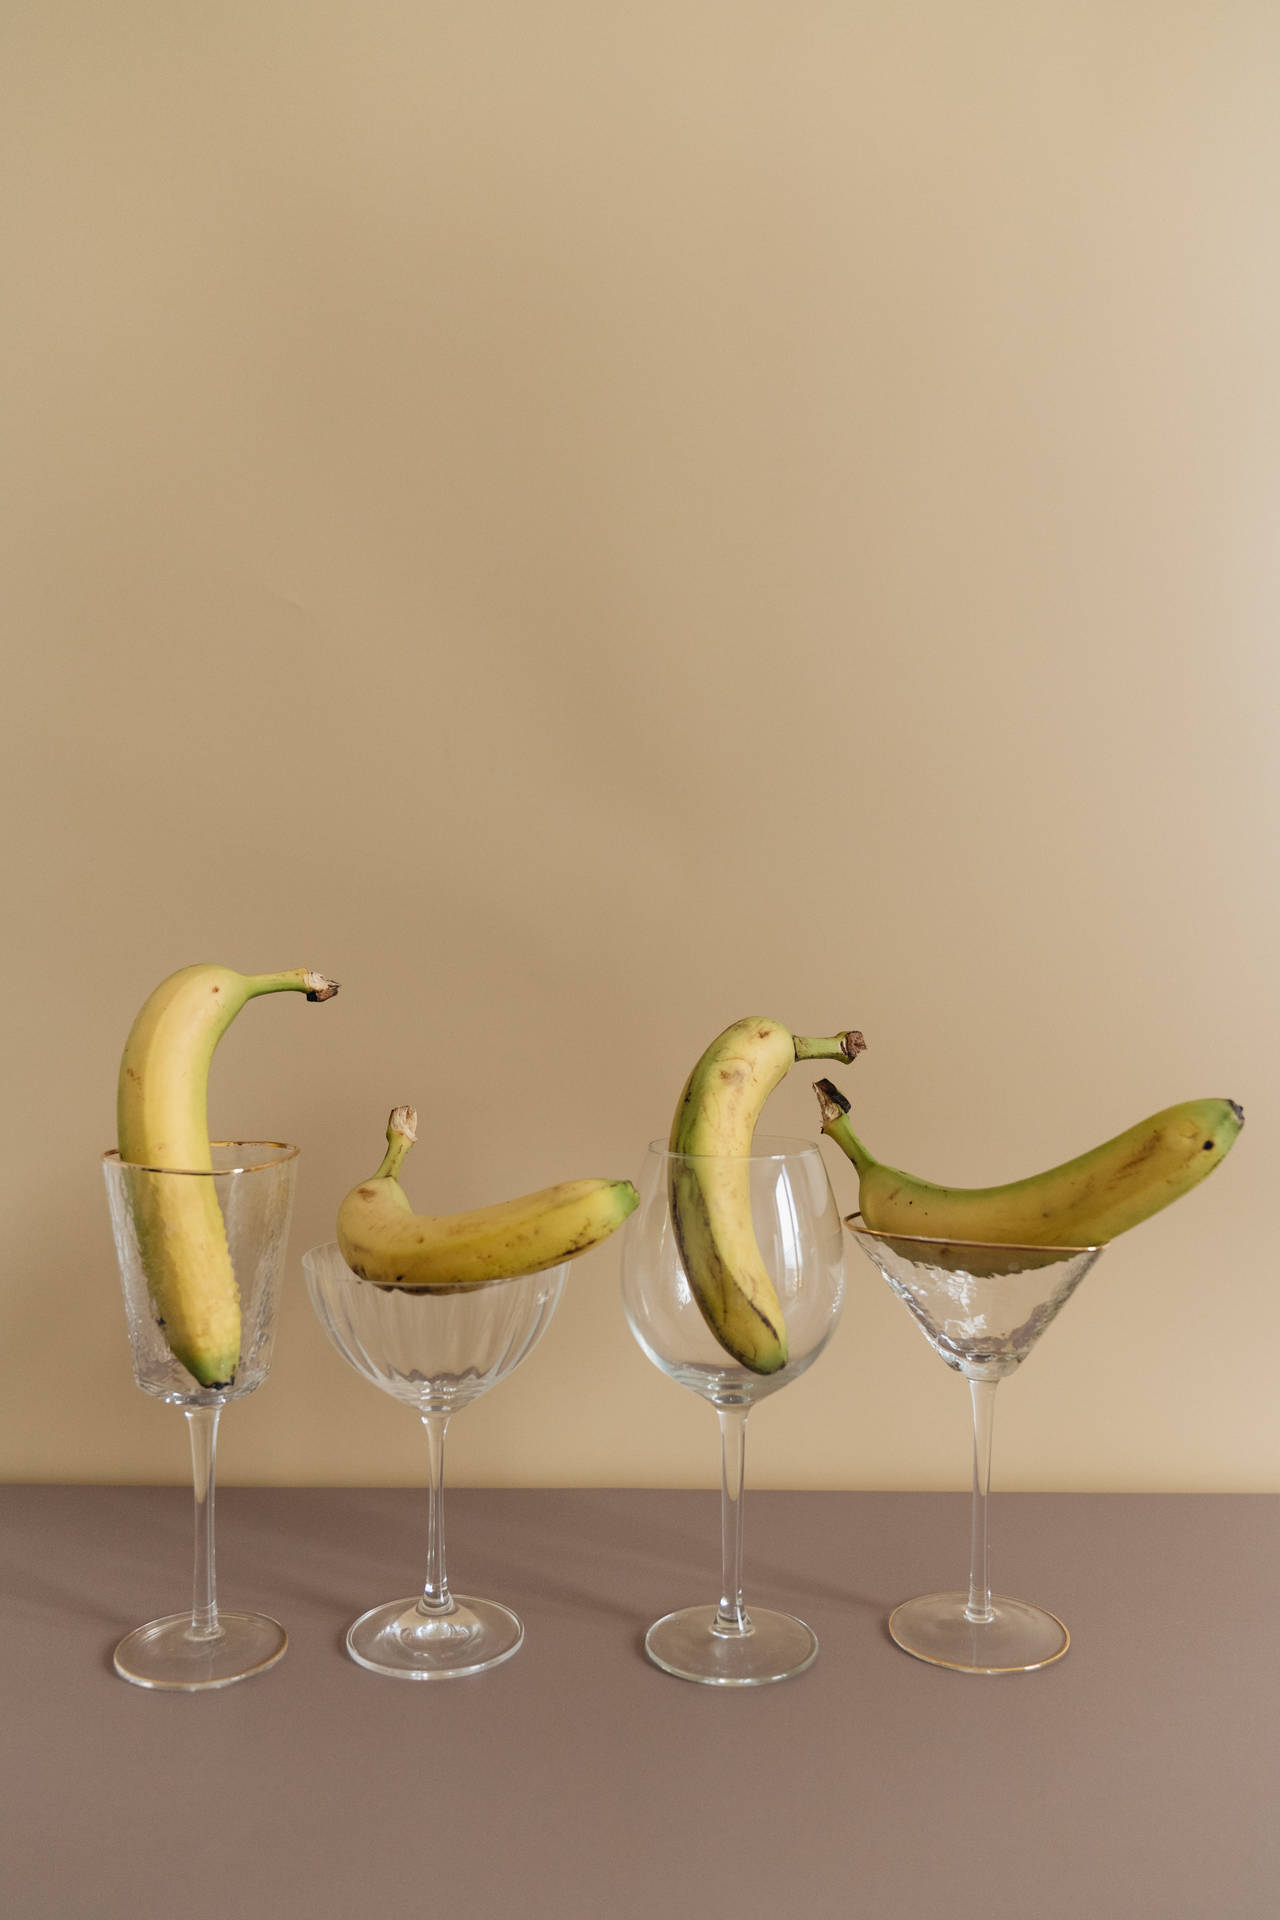 Bananein Weingläsern Wallpaper